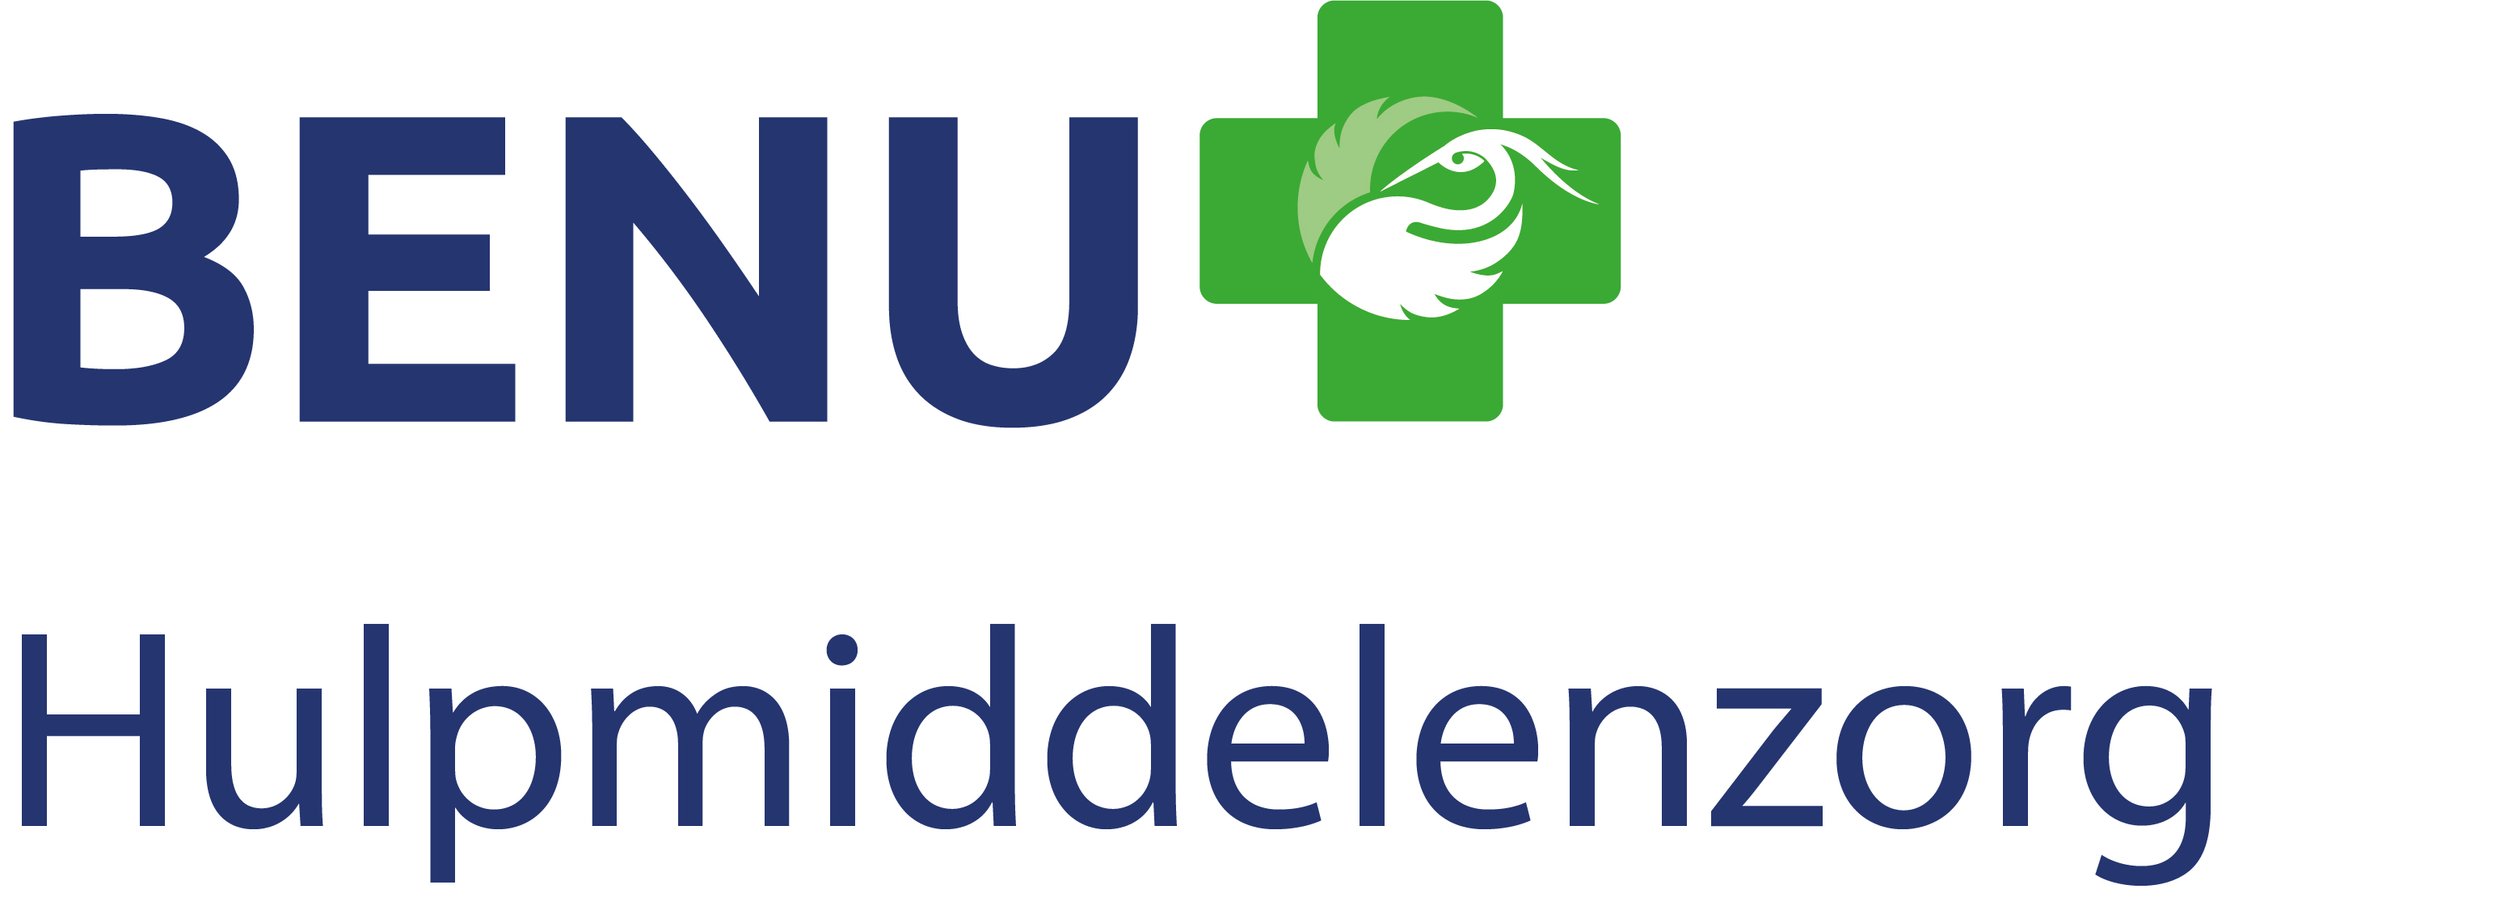 BENU Hulpmiddelenzorg logo RGB.jpg